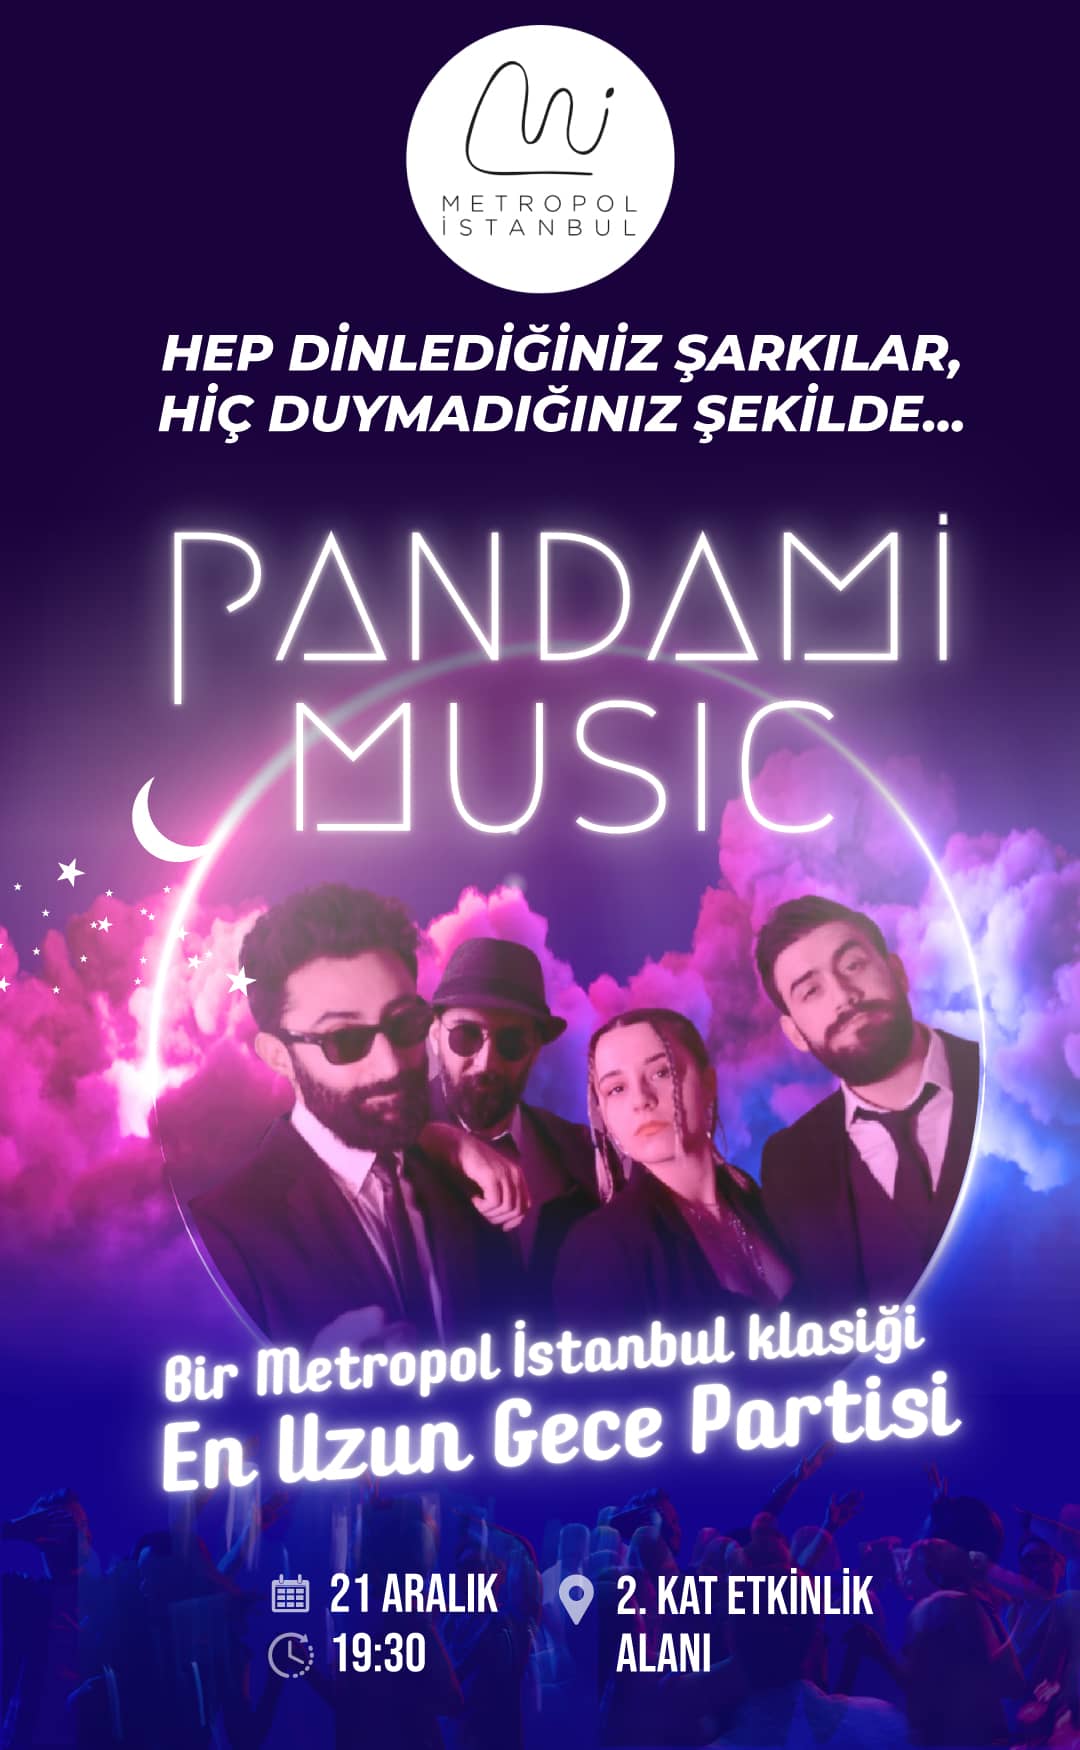 Metropol İstanbul Geleneksel 21 Aralık En Uzun Gece Konseri’nde Bu Yıl Pandami Music Olacak!